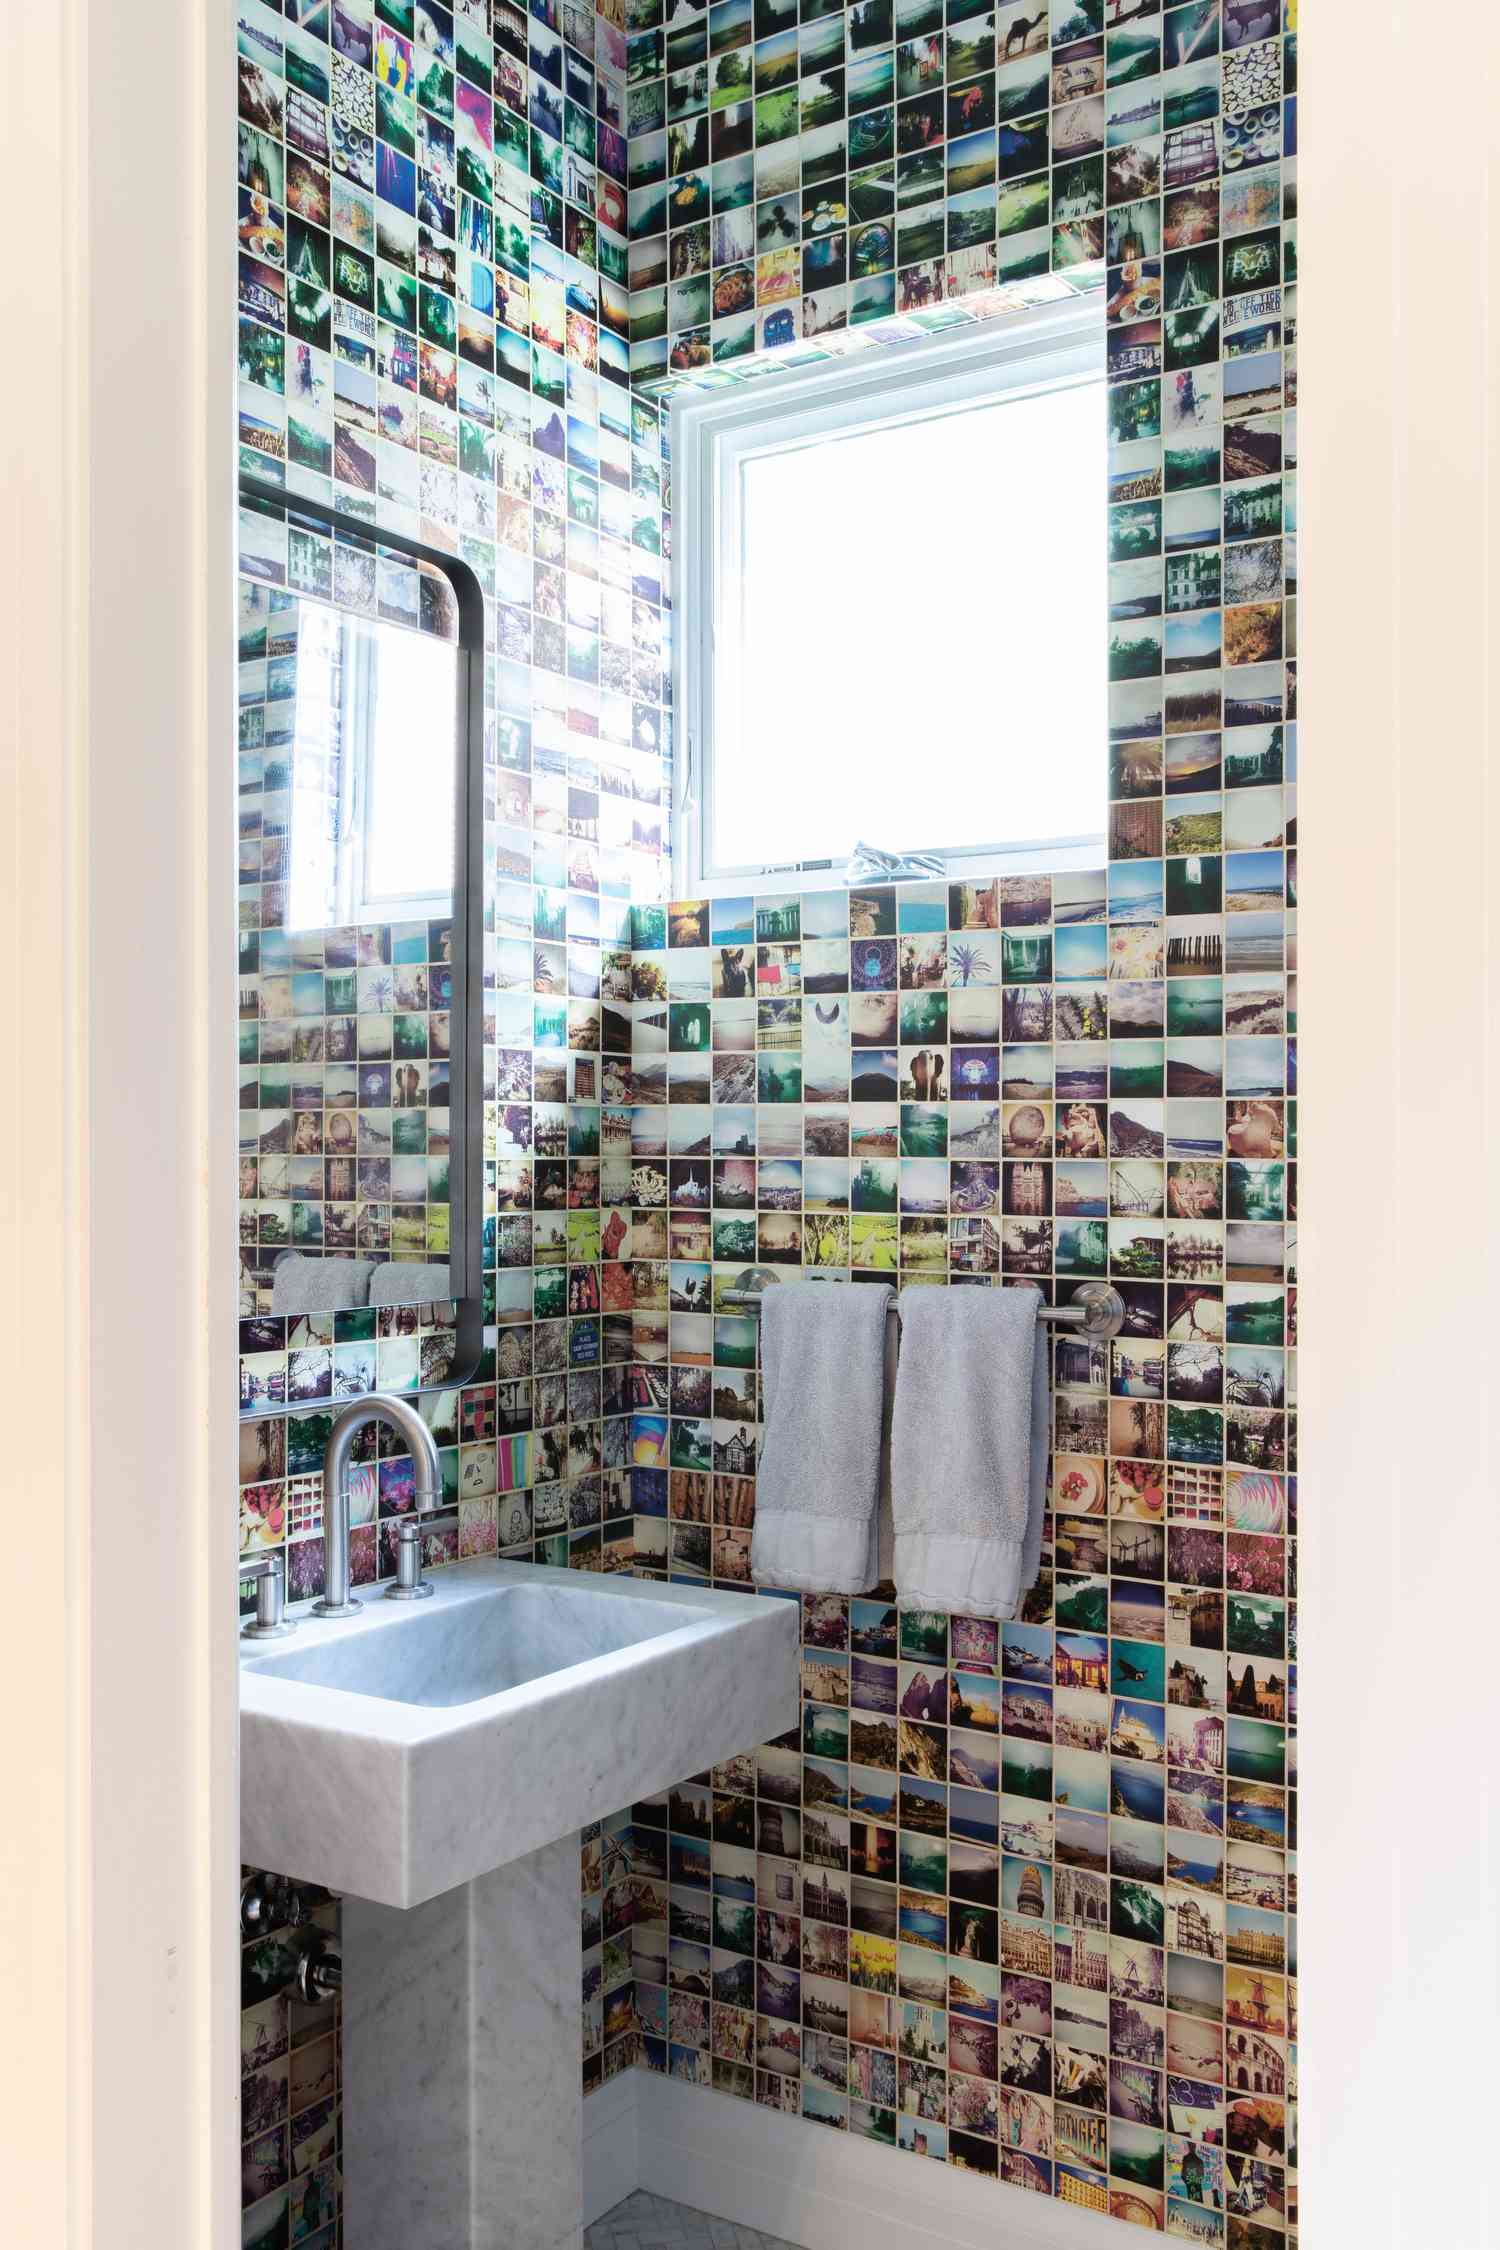 Papel de parede com impressão de fotos em um lavabo